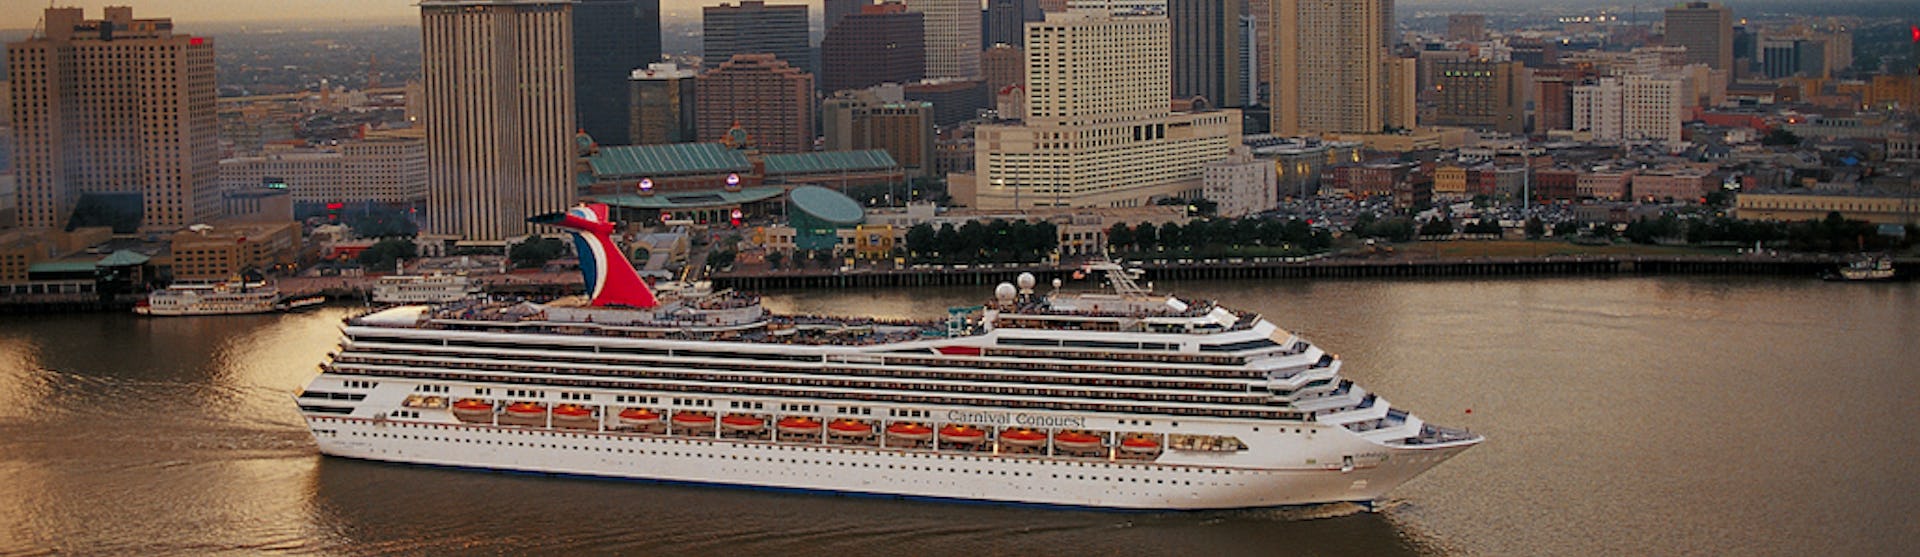 Fartyget Carnival Conquest kryssar fram framför flera skyskrapor.